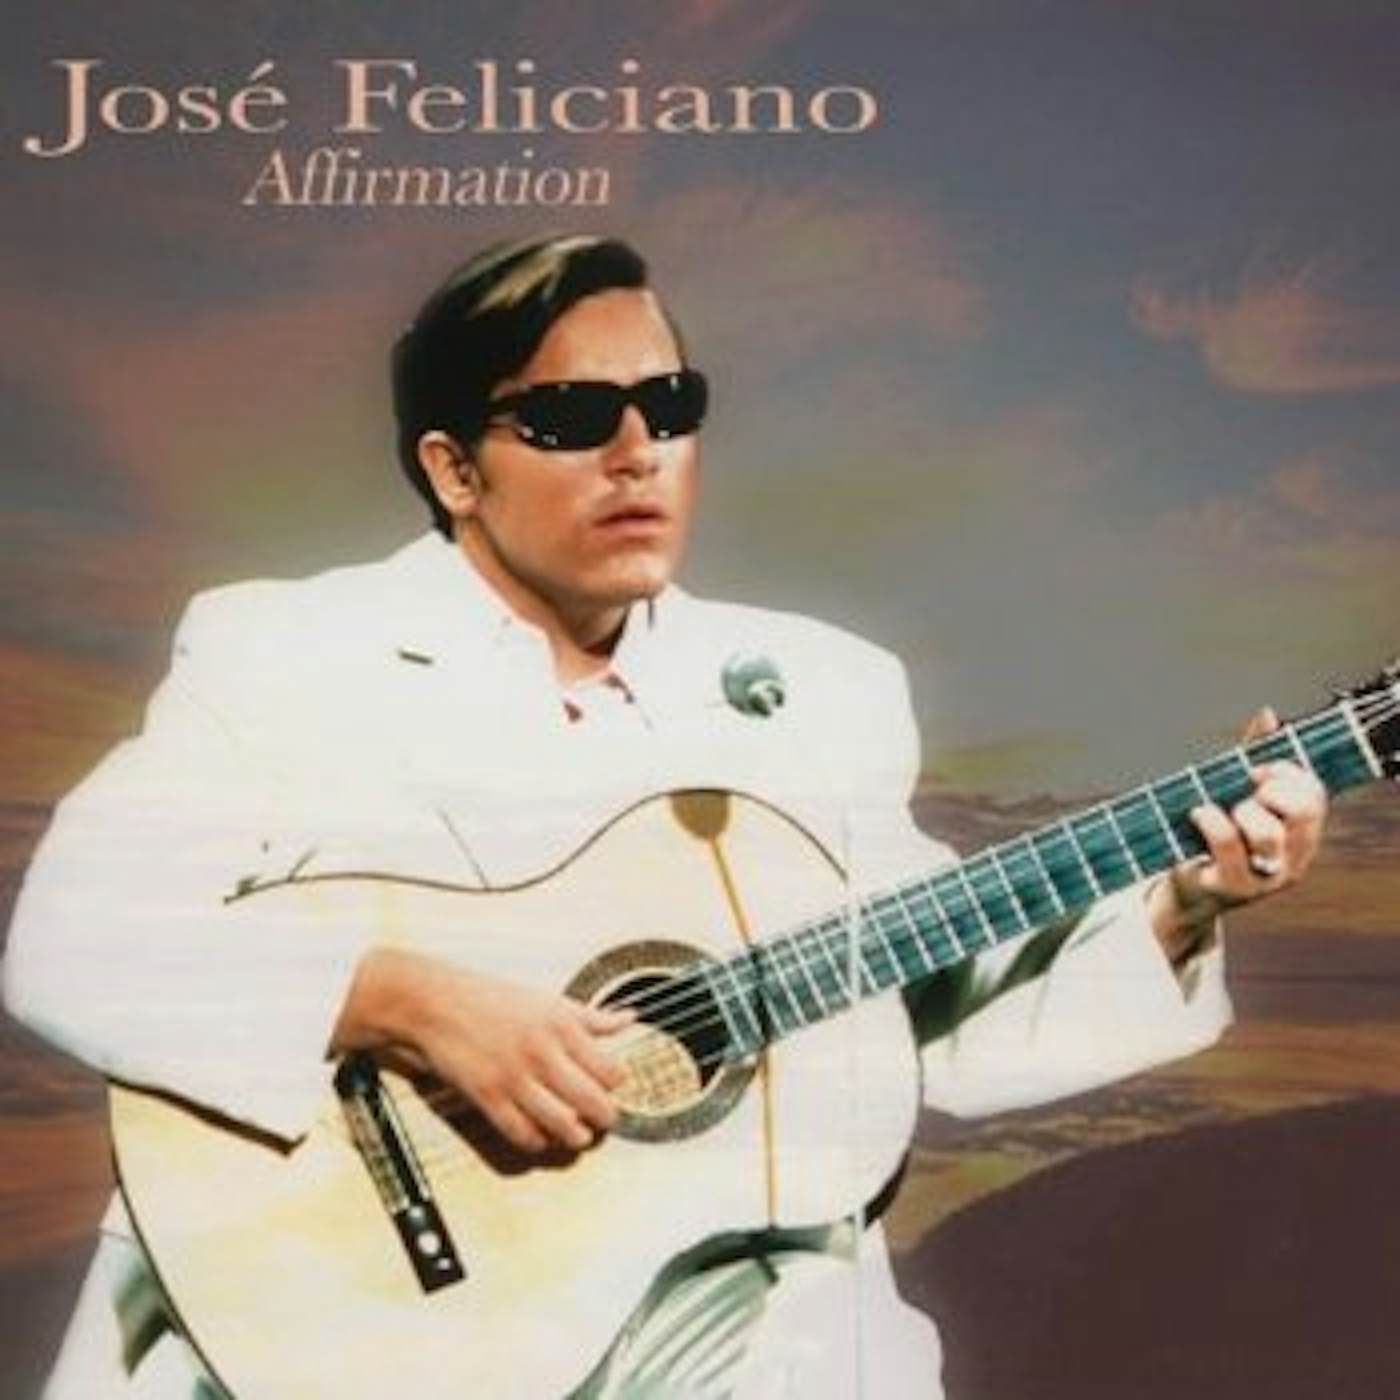 José Feliciano AFIRMATION CD